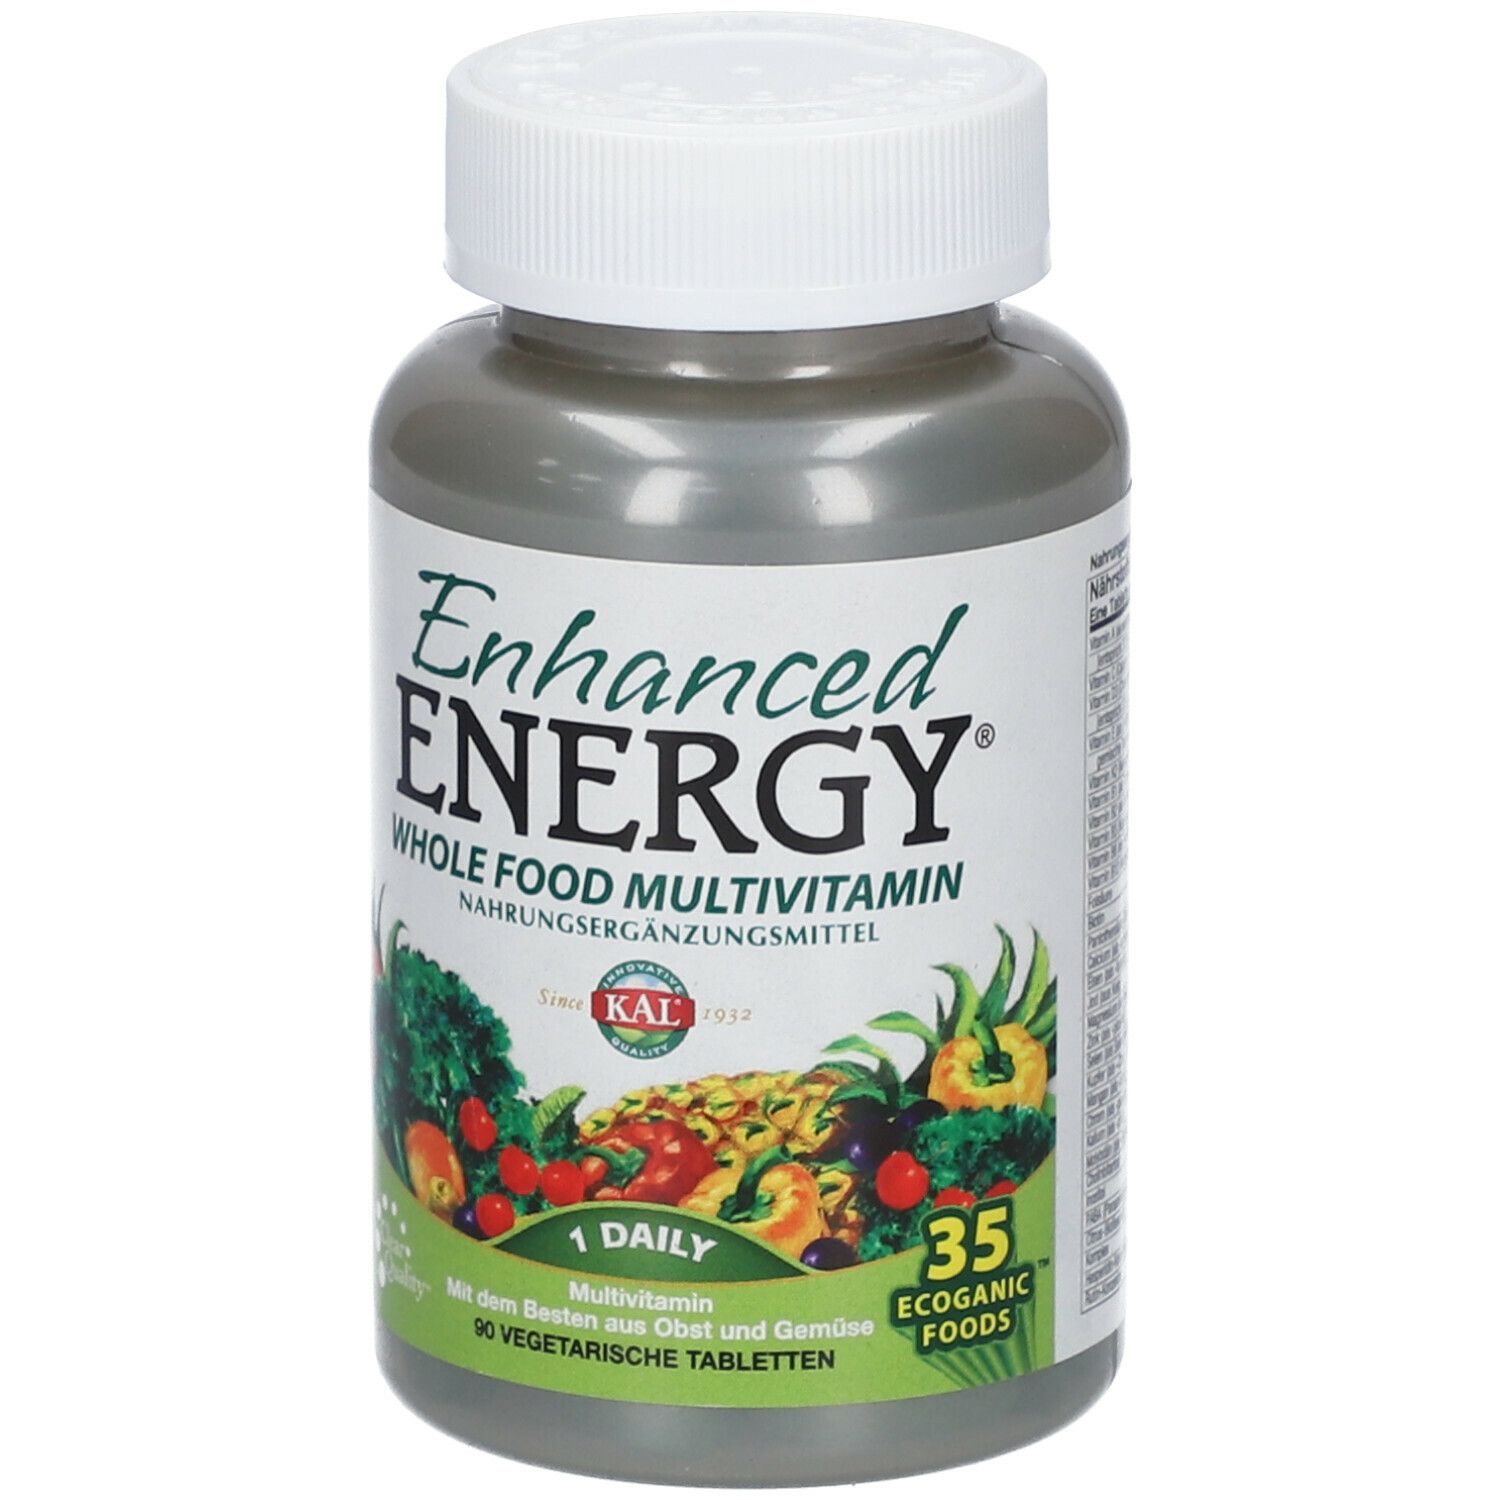 Enhanced Energy® Whole Food Multivitamin